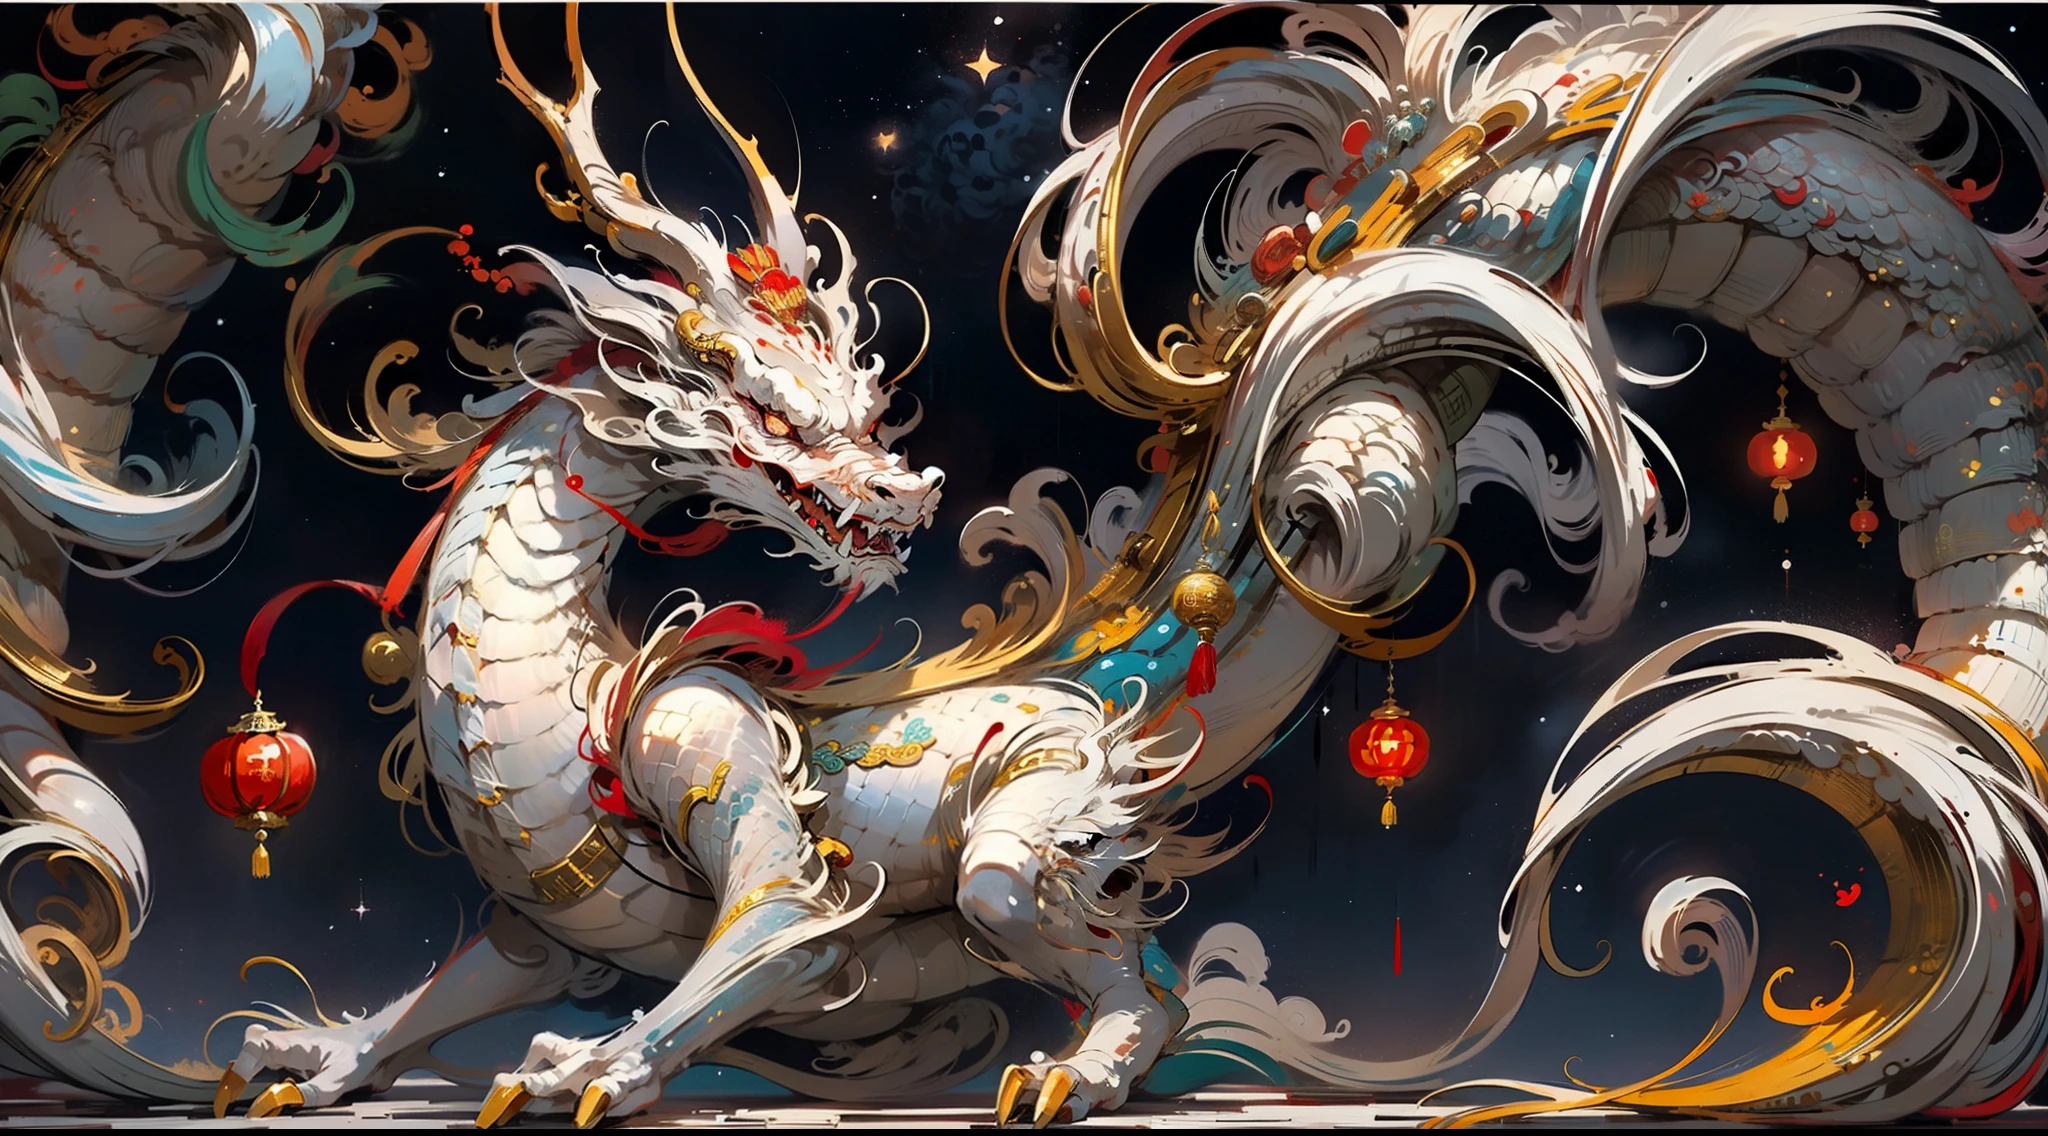 Dragão tradicional chinês, auspicioso rui, sabedoria, combinação de cores vermelho e branco, fundo do céu estrelado, sentido dinâmico